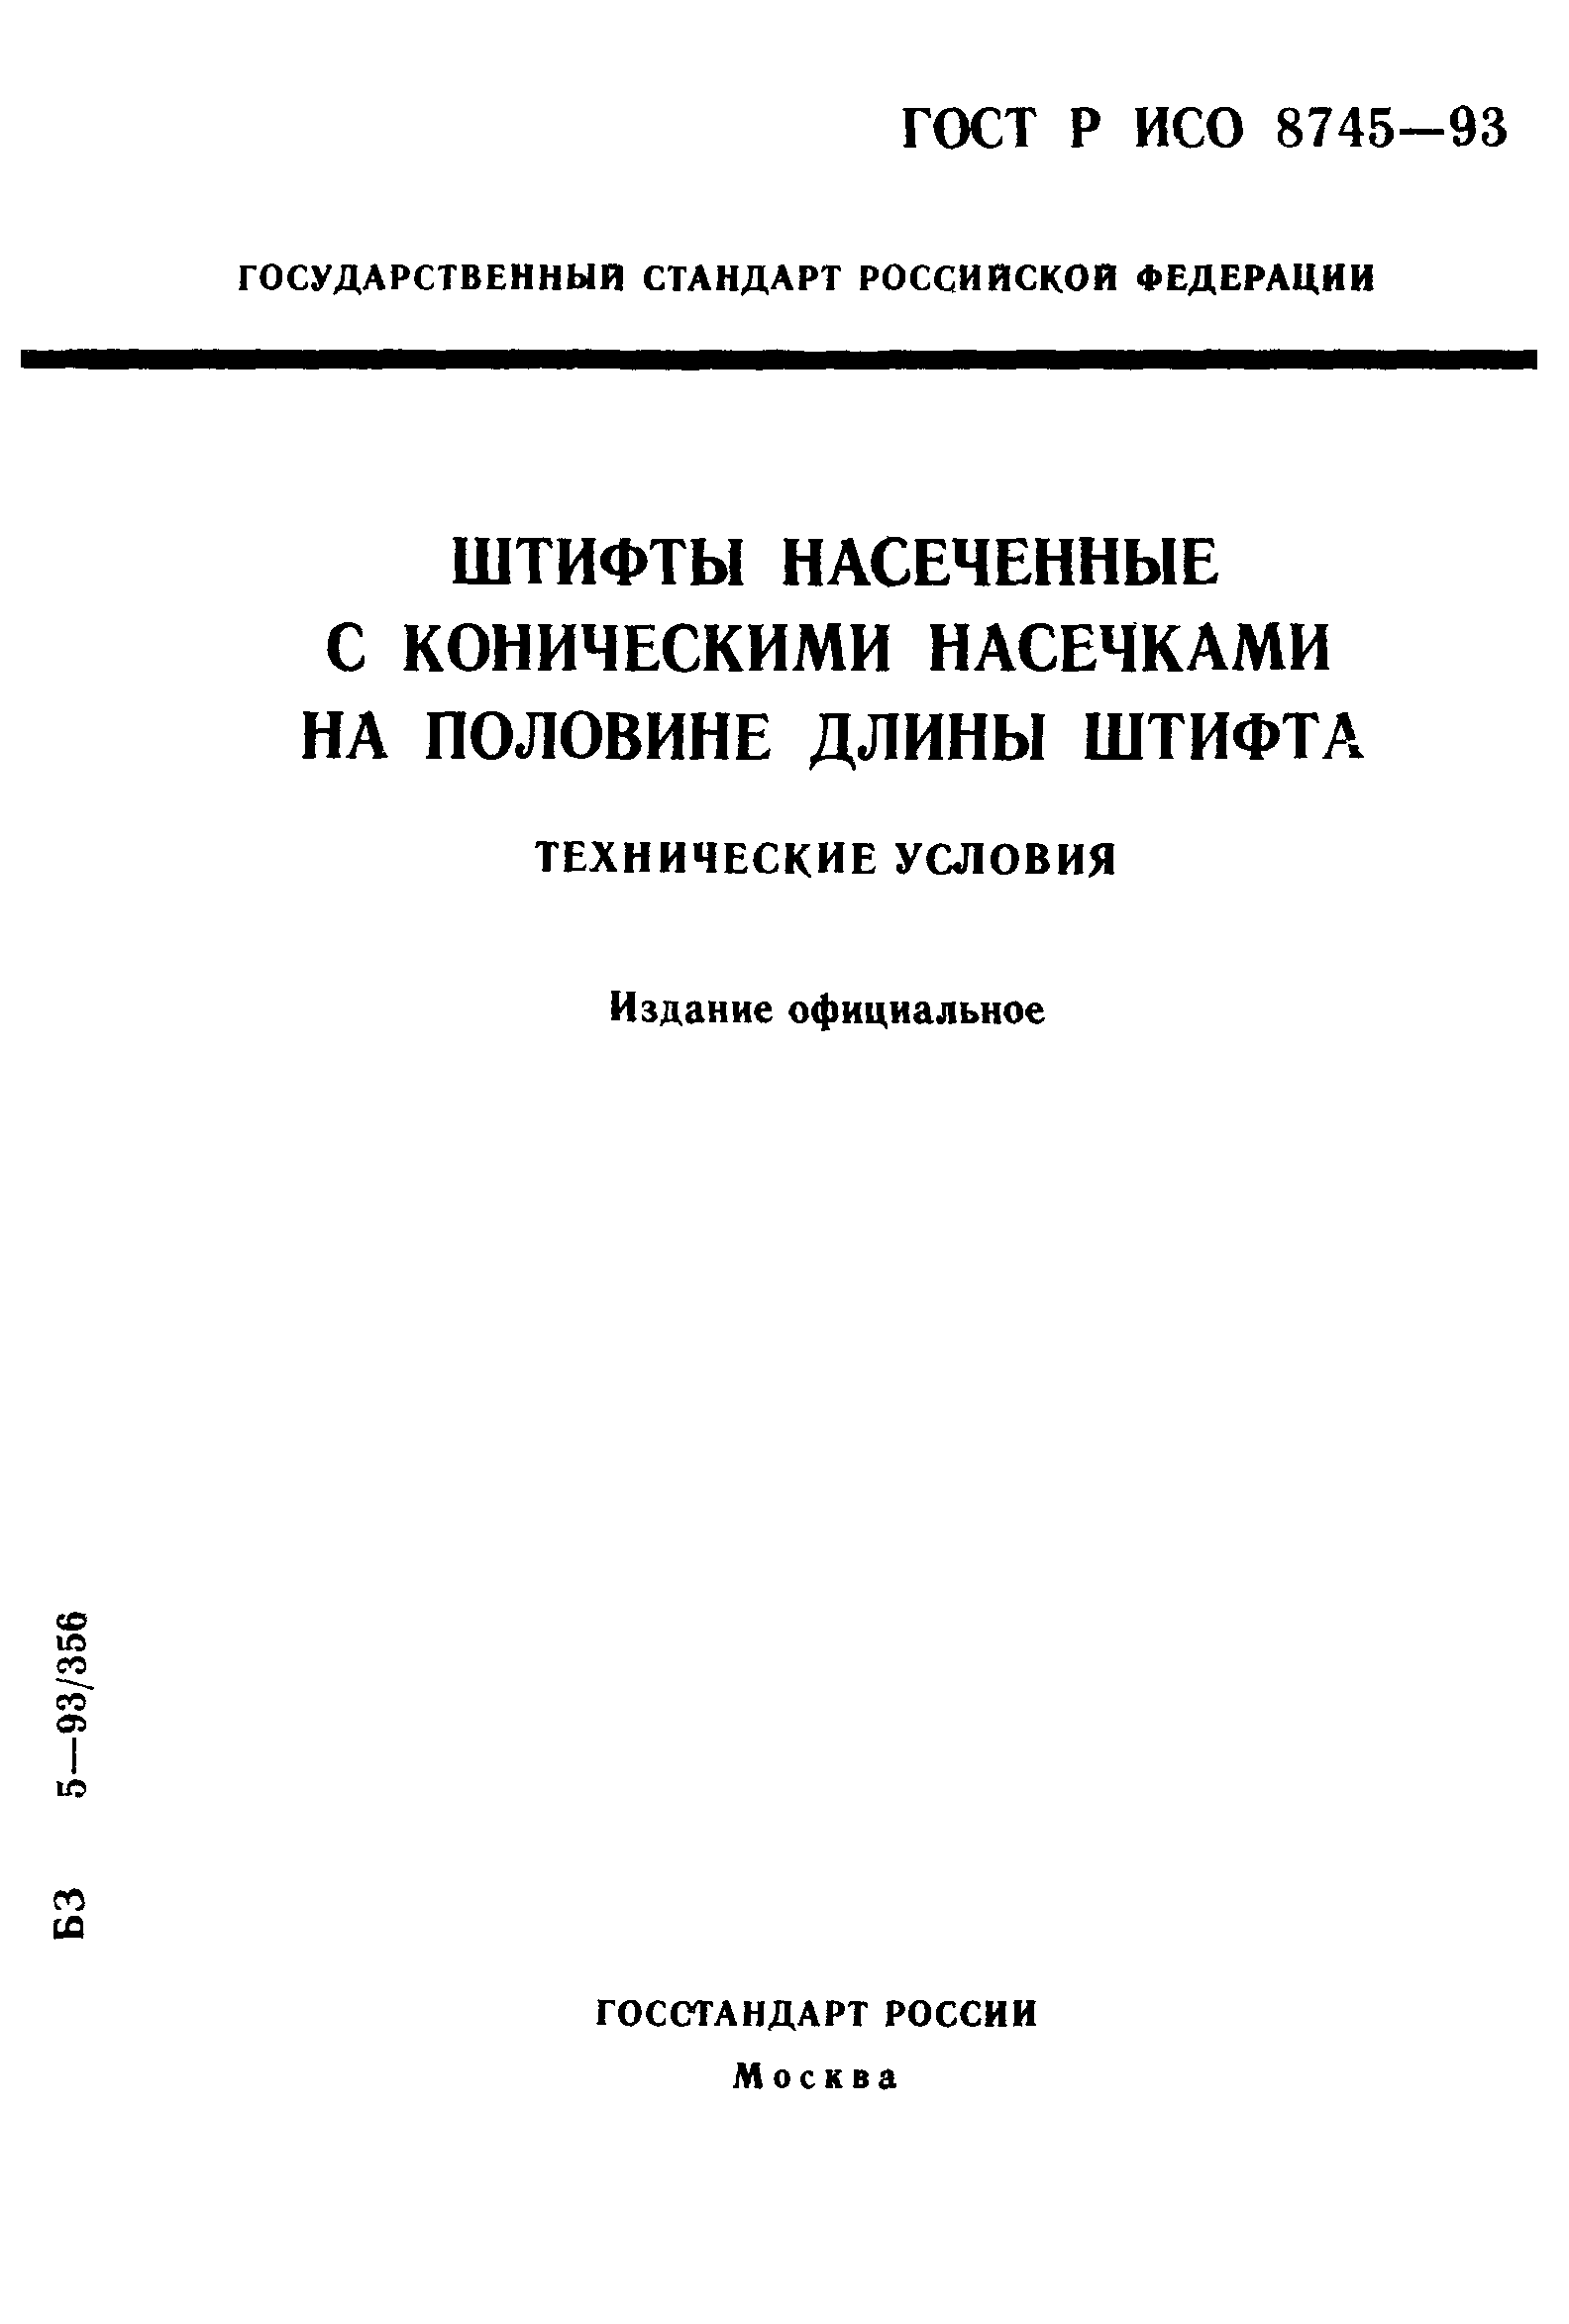 ГОСТ Р ИСО 8745-93